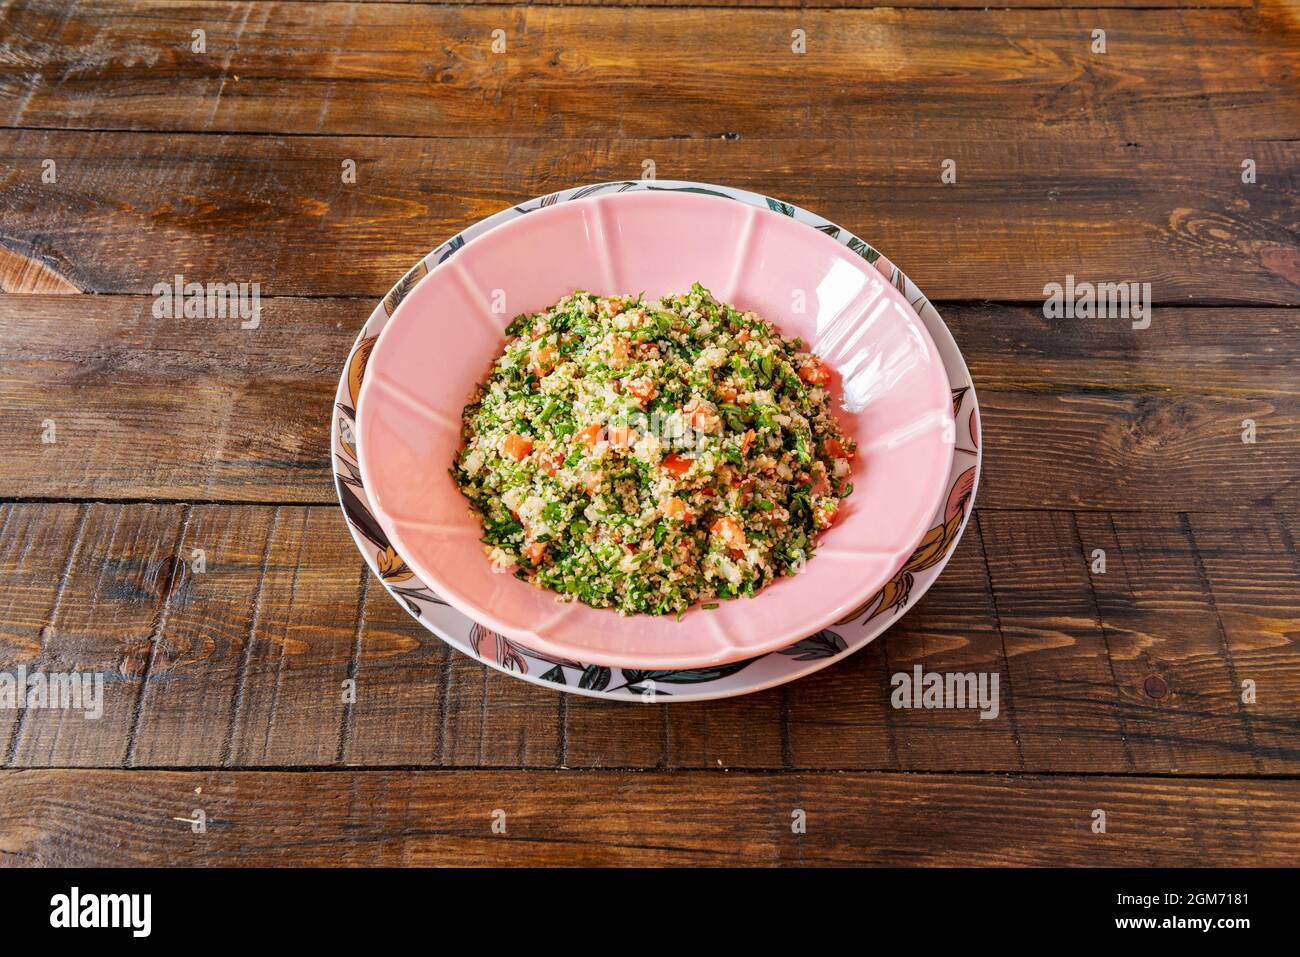 Recette marocaine pour tabule de couscous avec légumes hachés et huile d'olive Banque D'Images